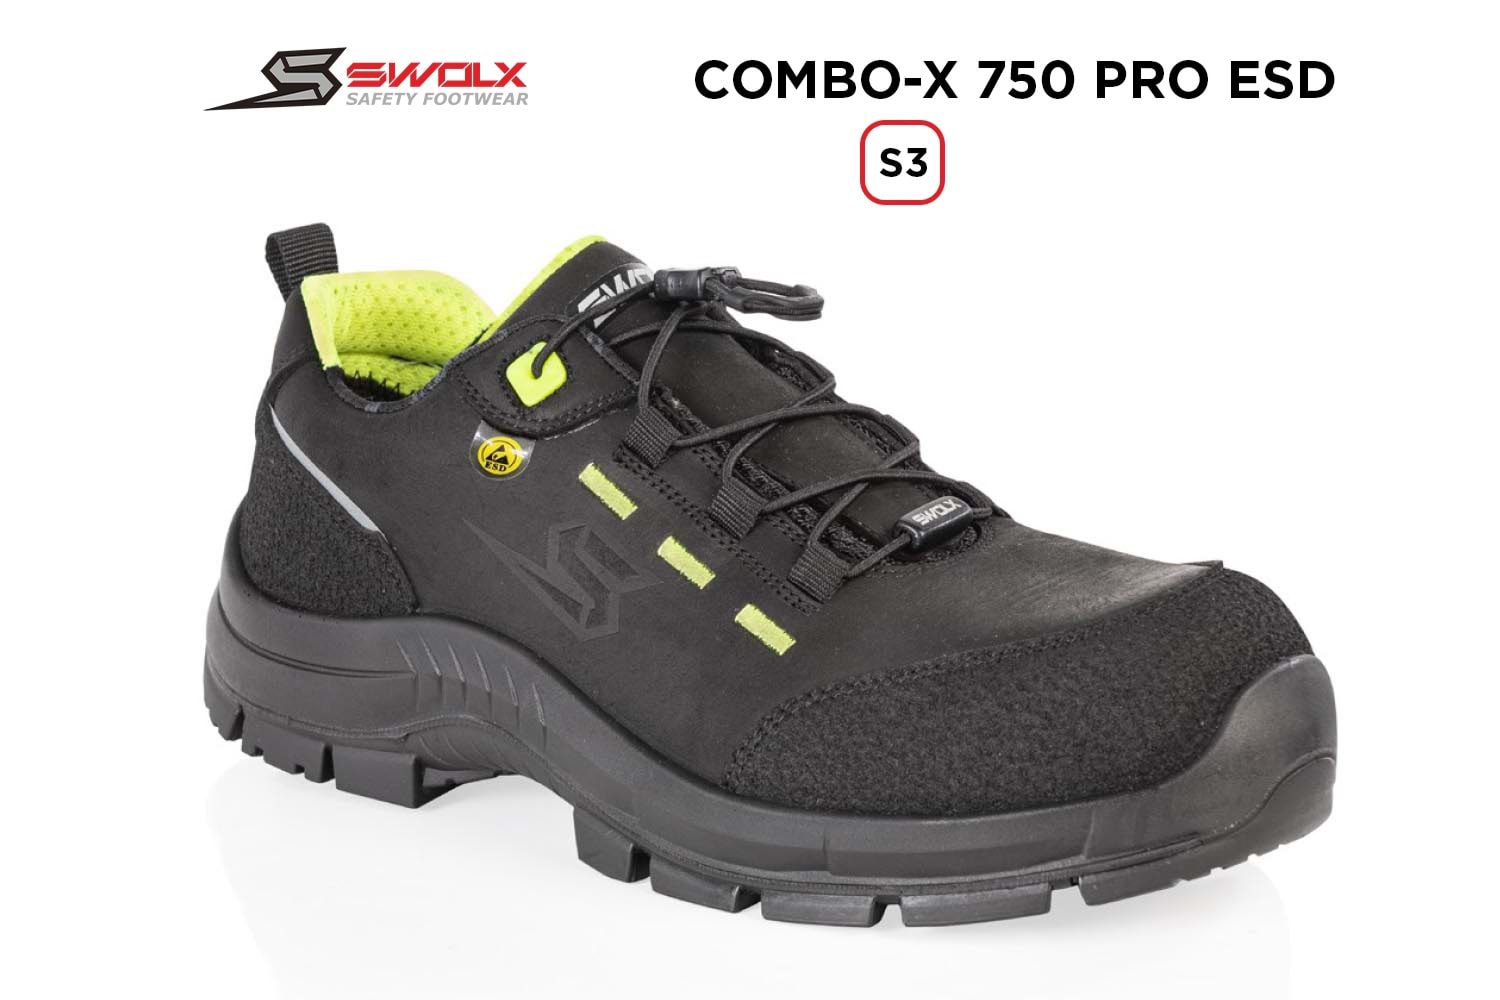 Swolx İş Ayakkabısı - Combo-X Pro Esd 750 S3 - 42